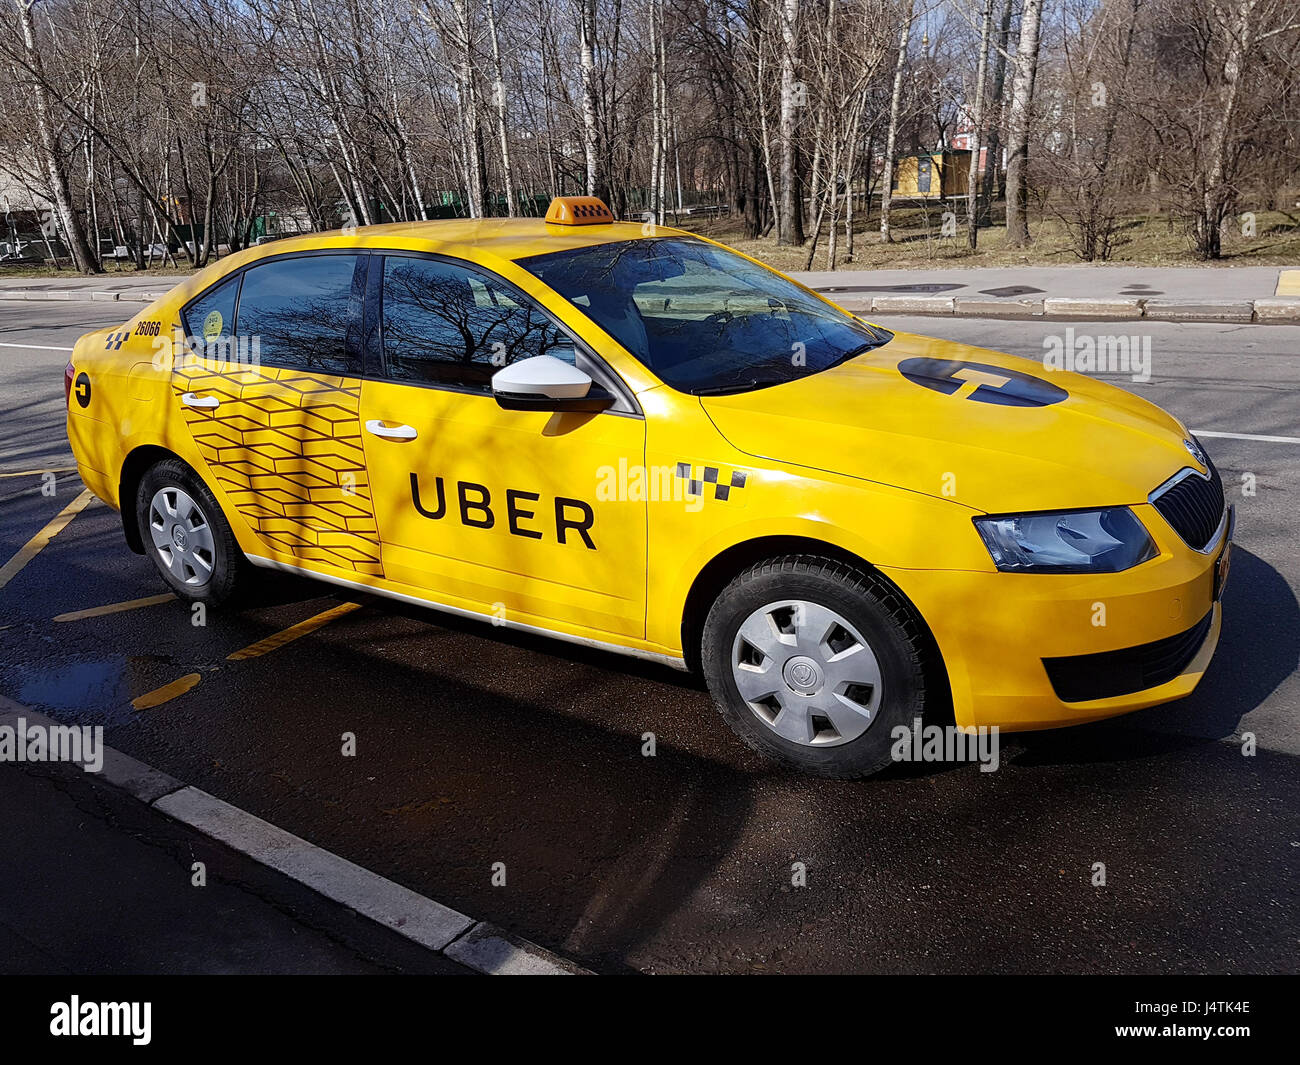 Nuevo taxi amarillo con logotipo Uber Foto de stock